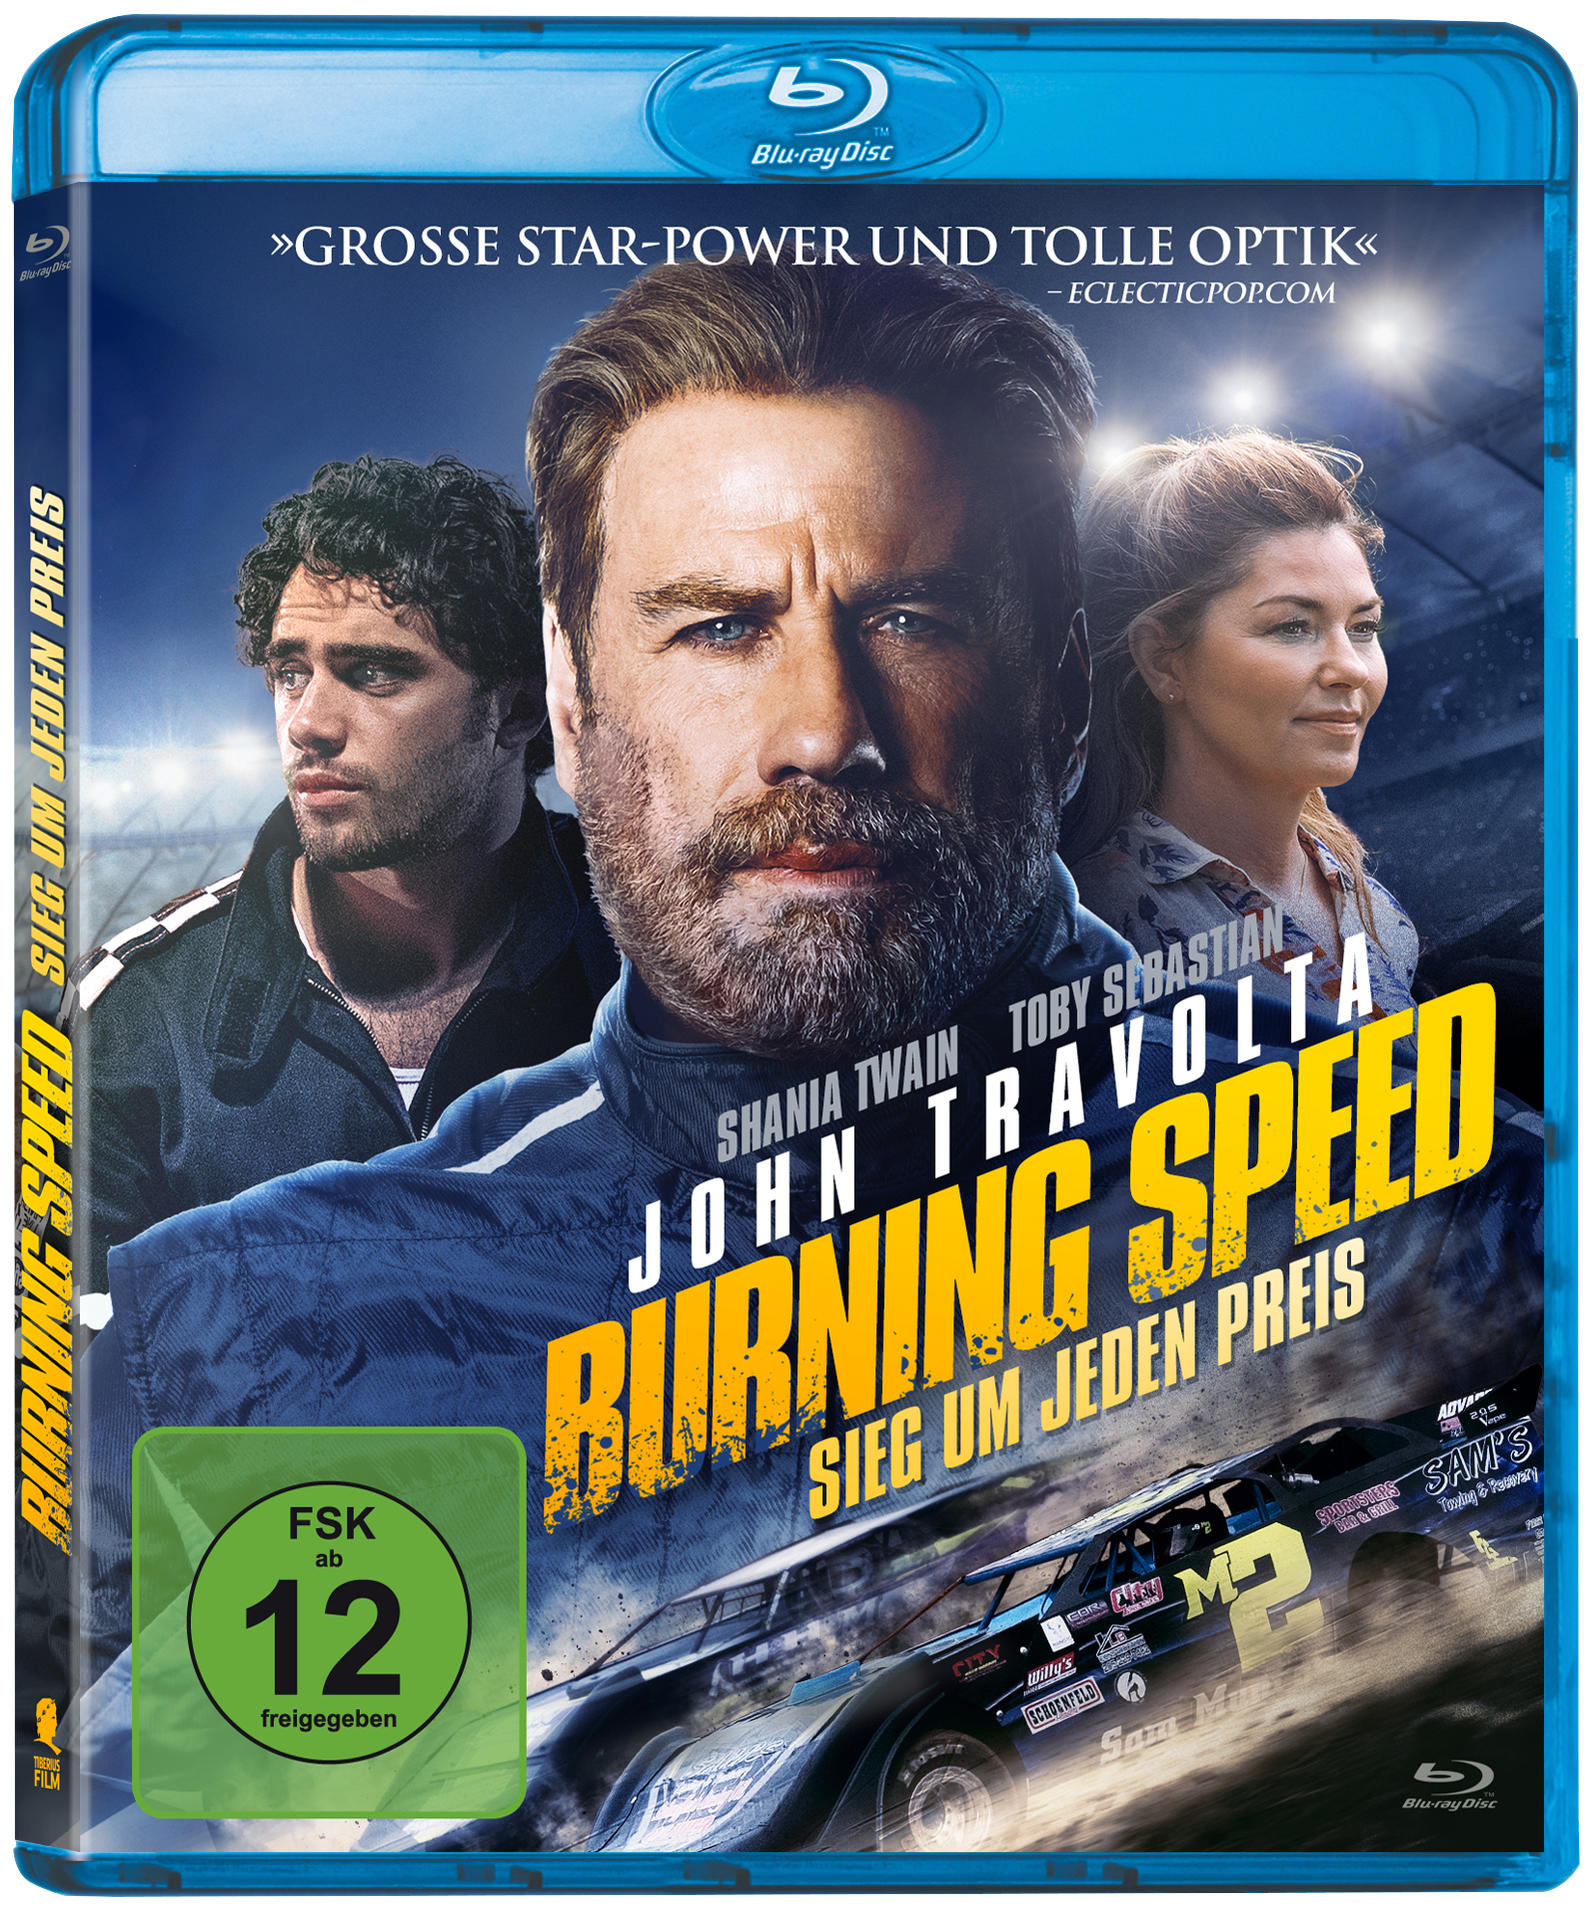 Burning Speed - Sieg jeden Blu-ray Preis um